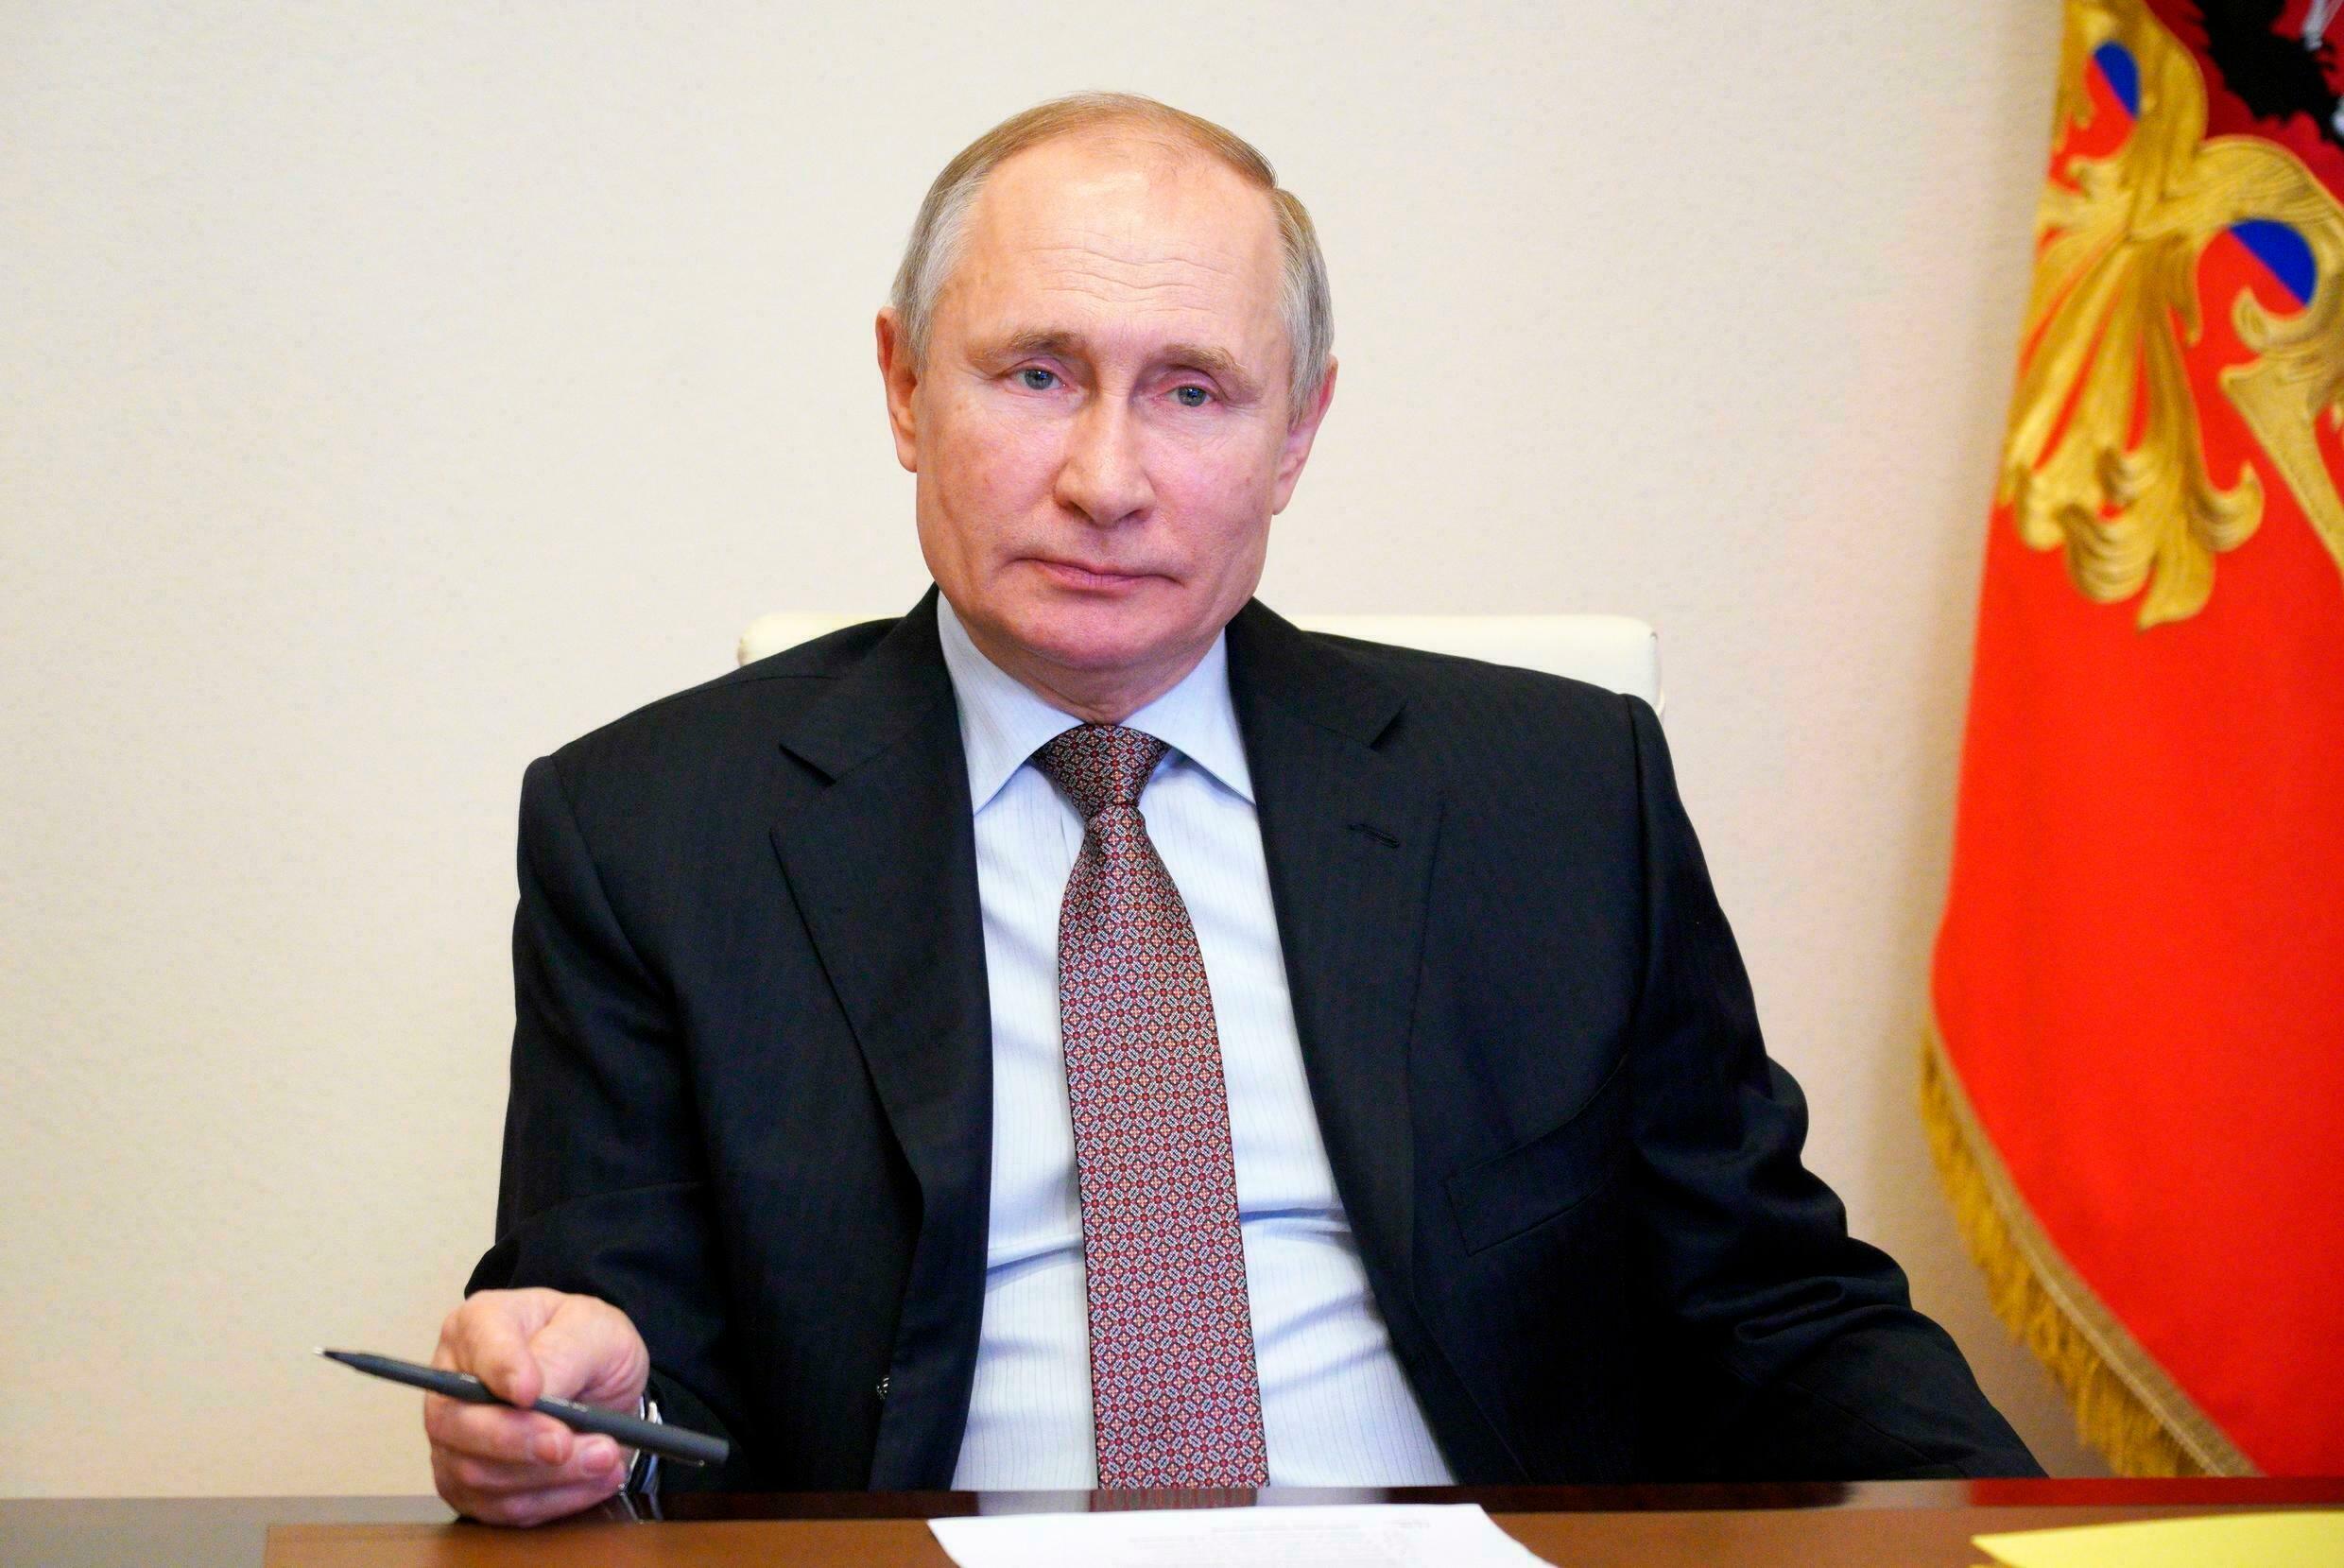 Vladimir Putin en cuarentena tras aumento de casos COVID-19 en su entorno